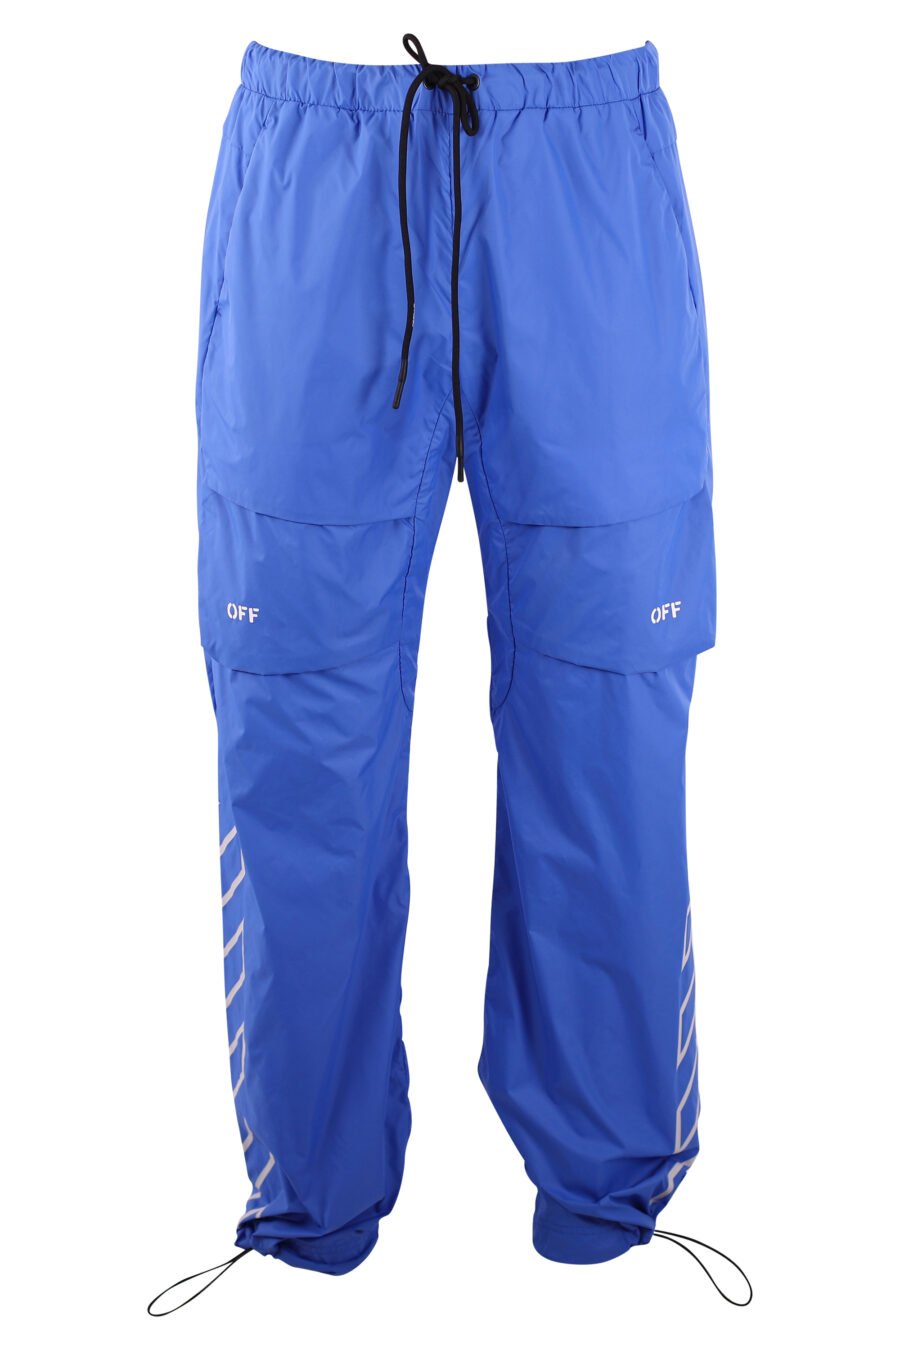 Pantalon cargo azul logo blanco "Diagonals" - IMG 3182